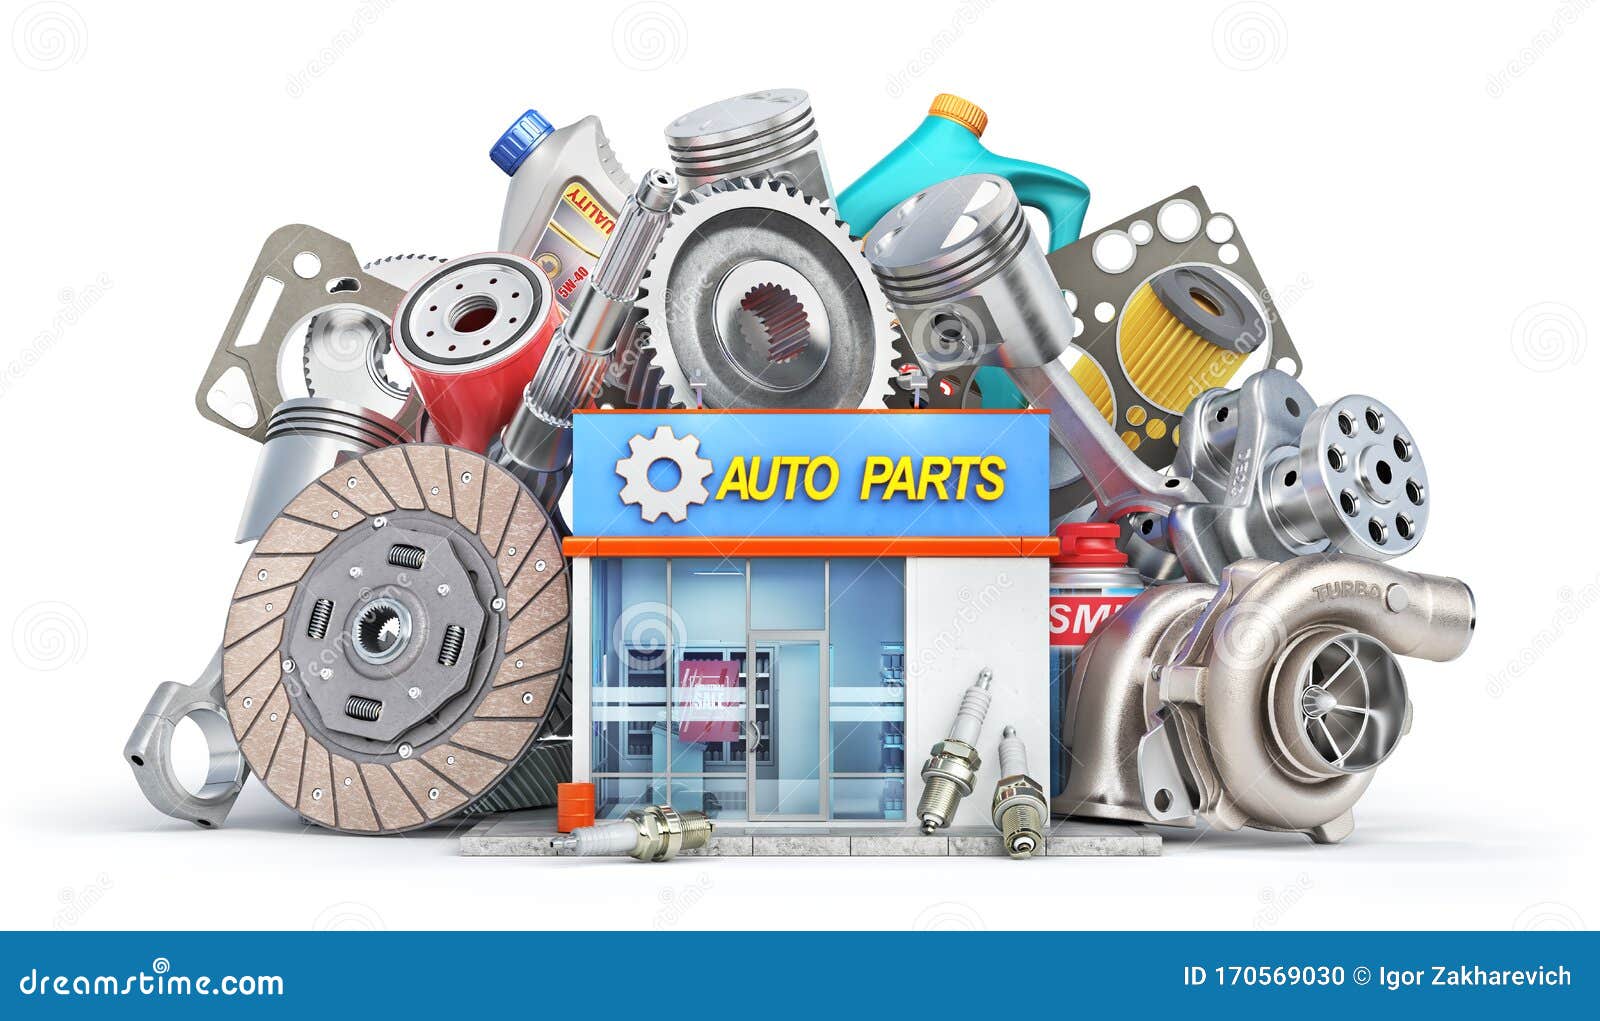 Japan Auto Parts Co Ltd   Japan Auto Parts Solutions Co Ltd